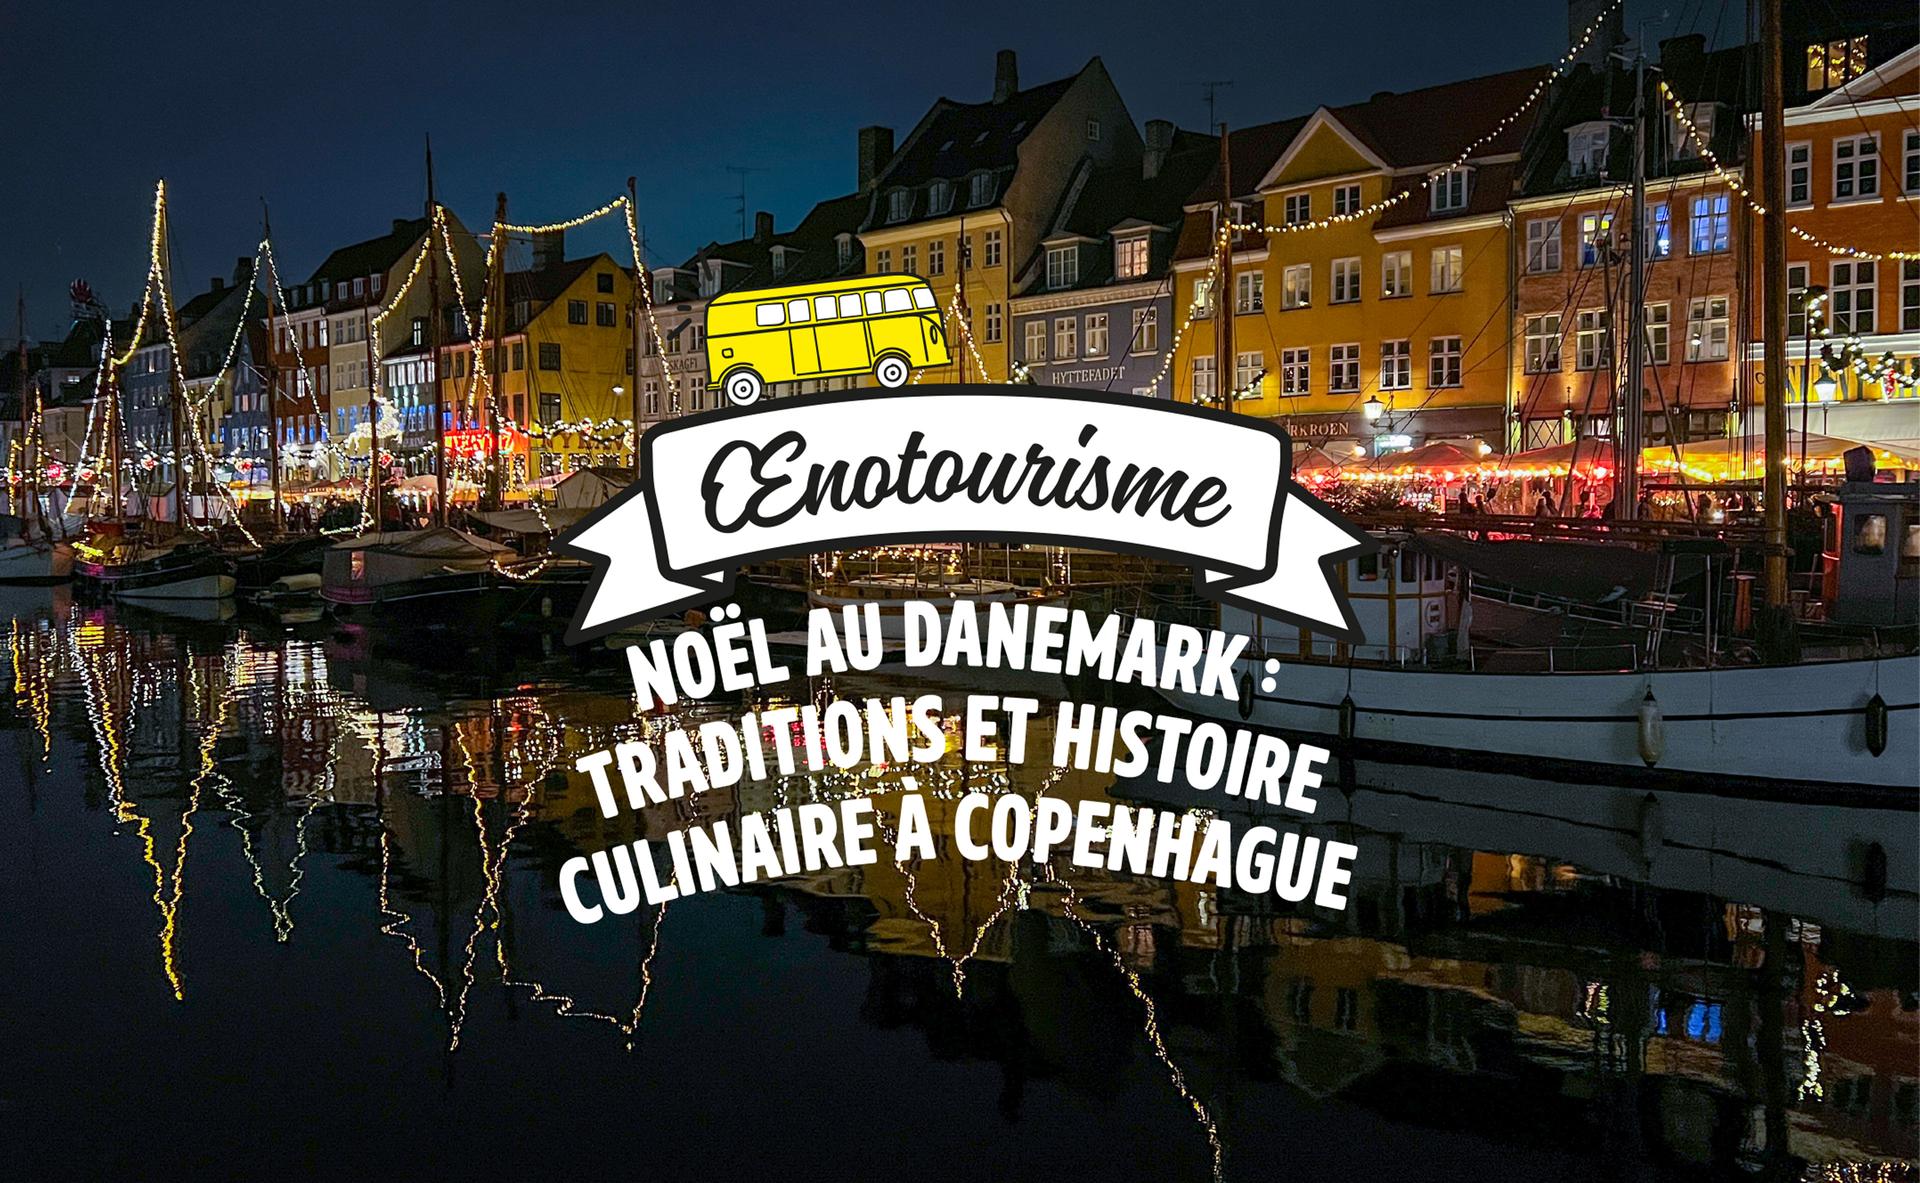 Noël au Danemark : traditions et histoire culinaire à Copenhague